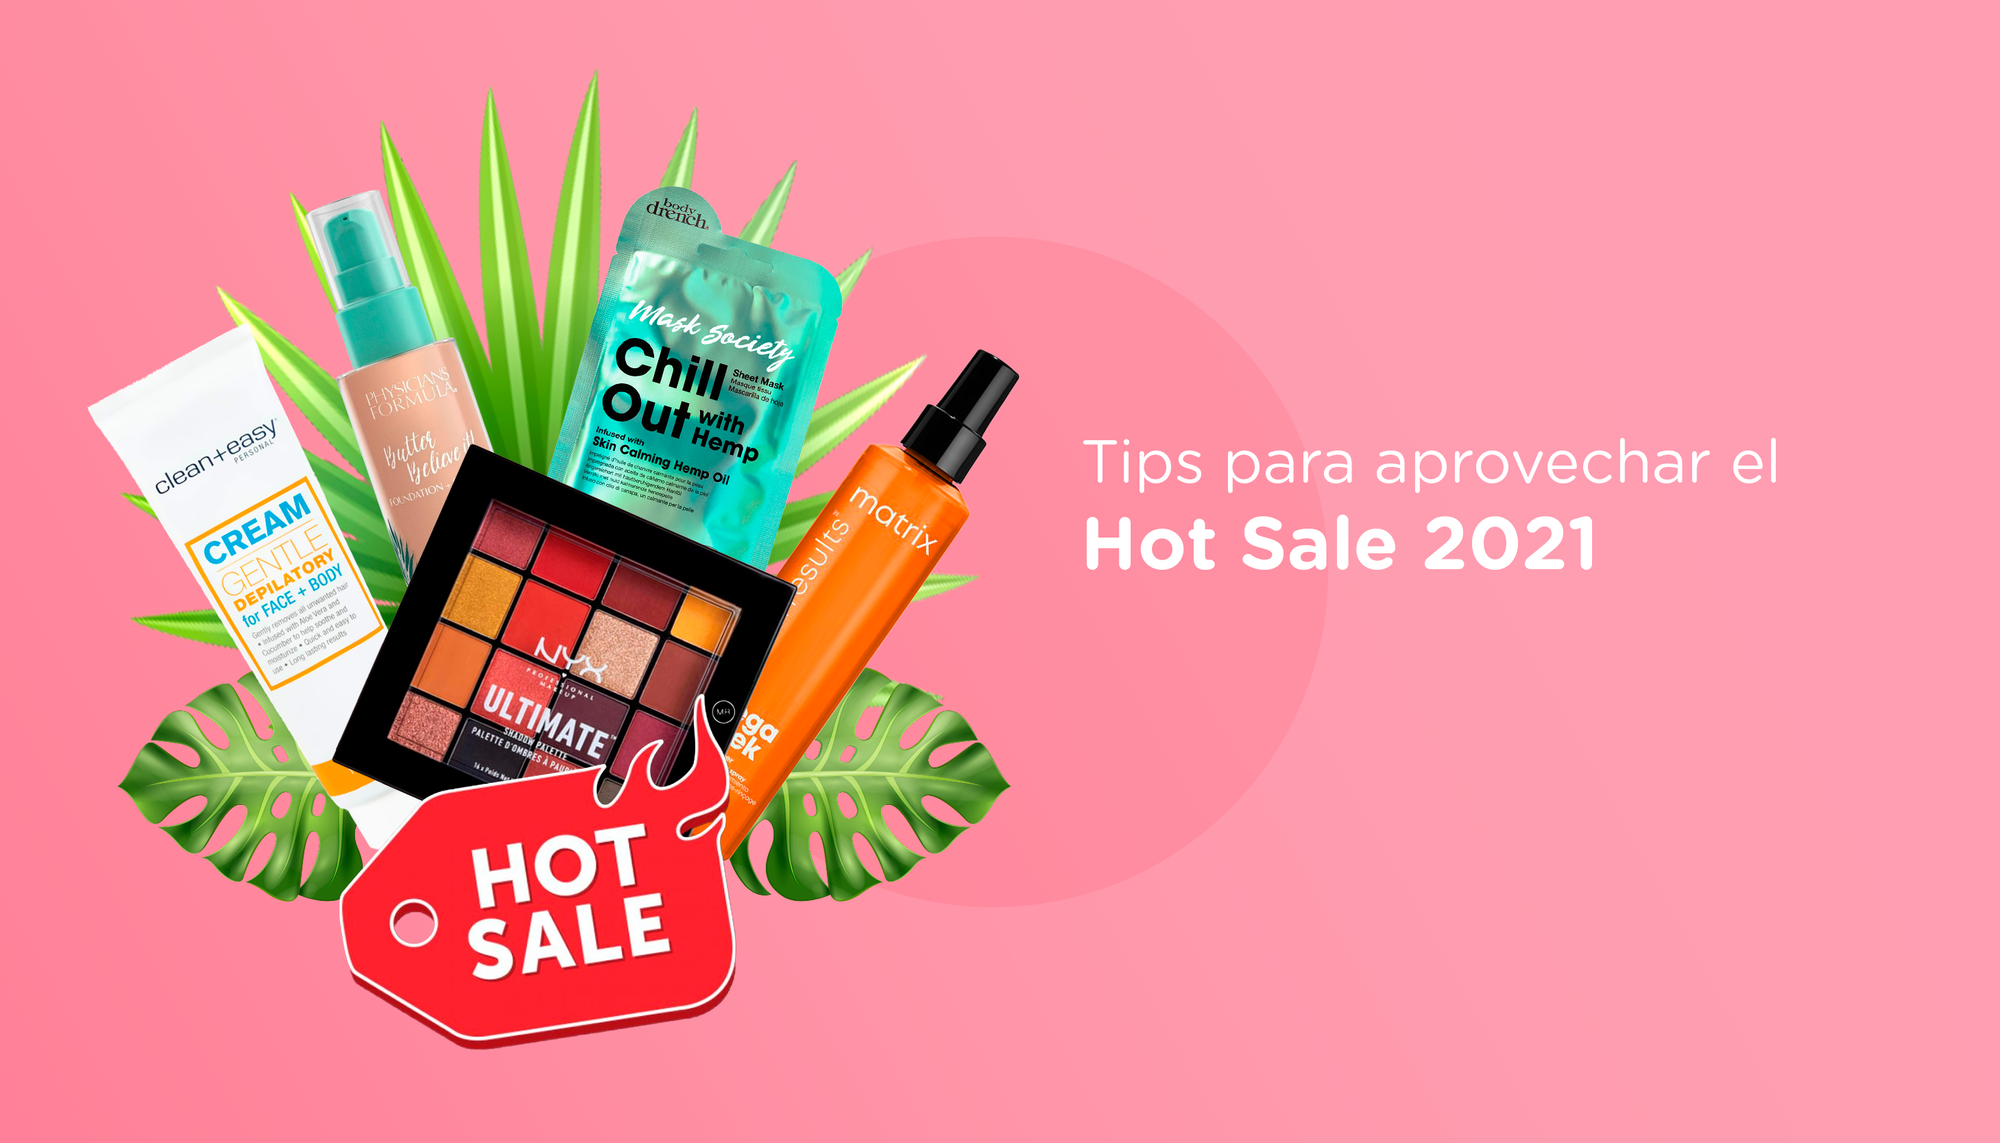 Tips para aprovechar el Hot Sale 2021